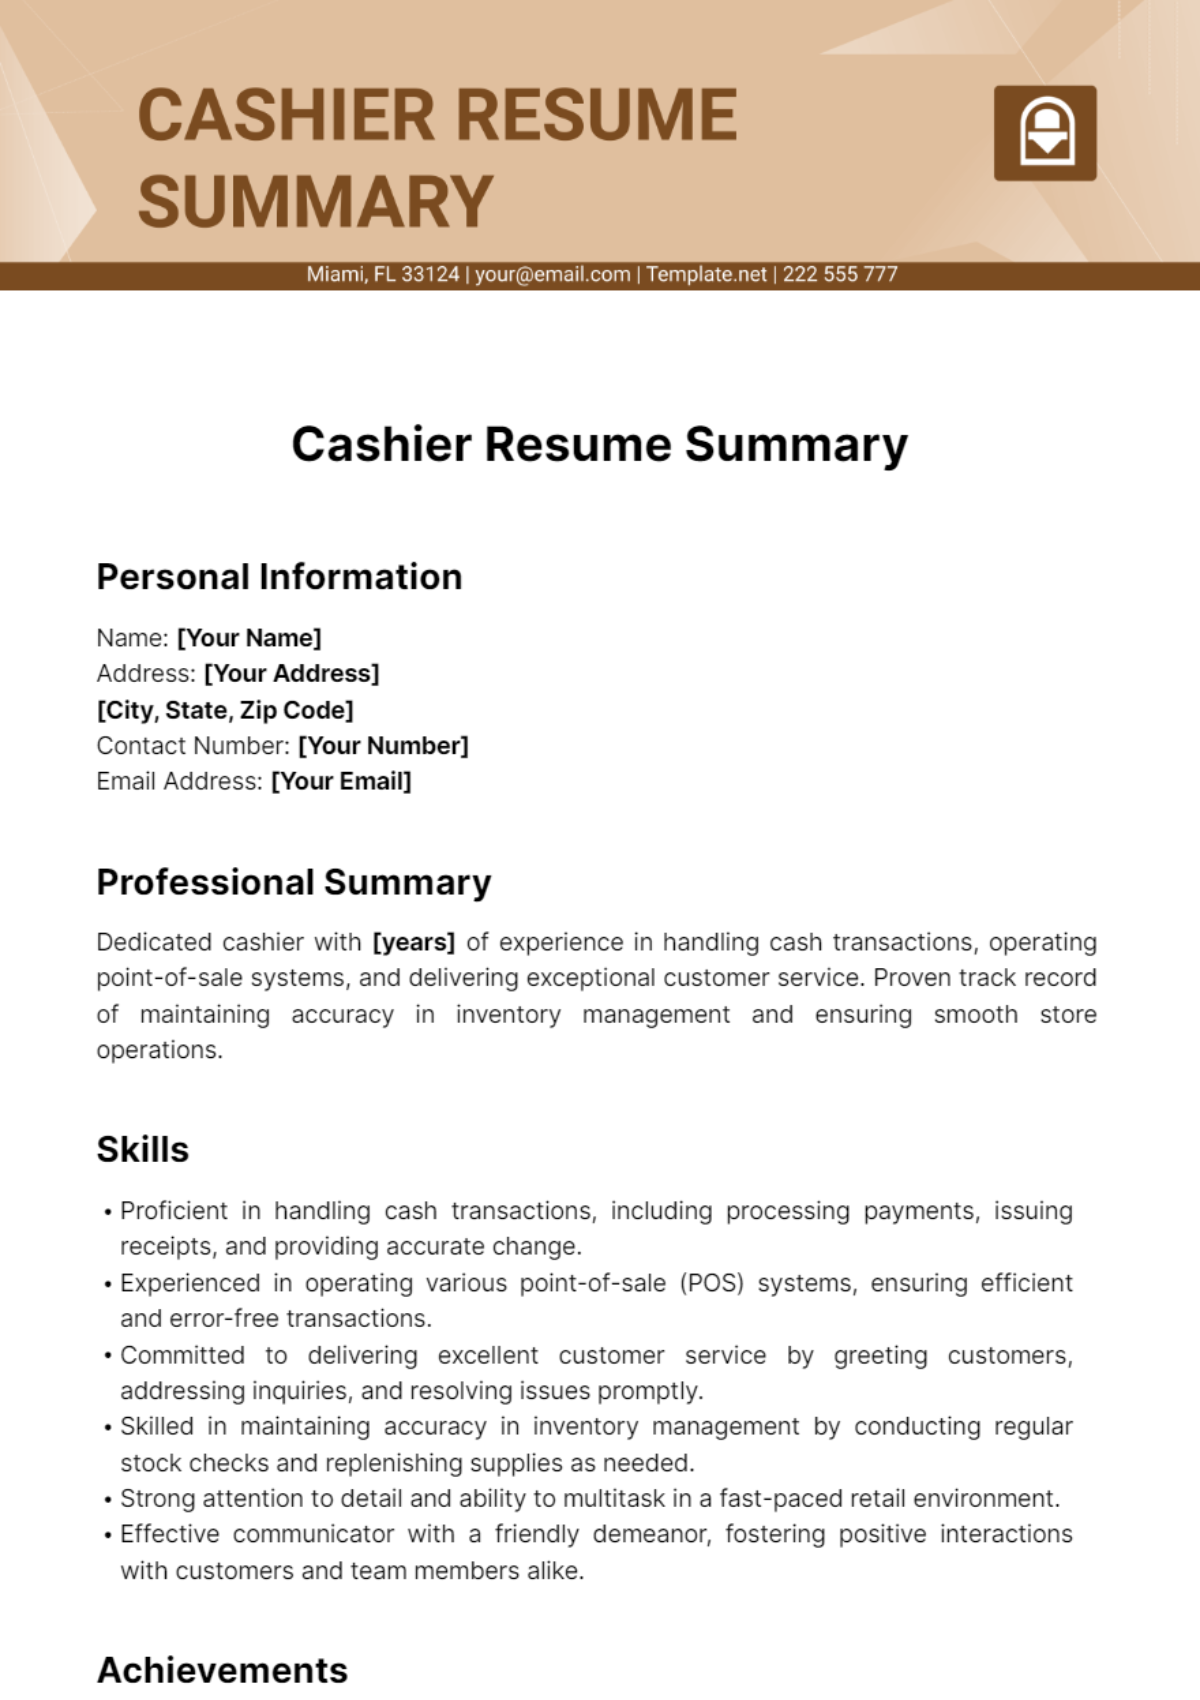 Cashier Resume Summary Template